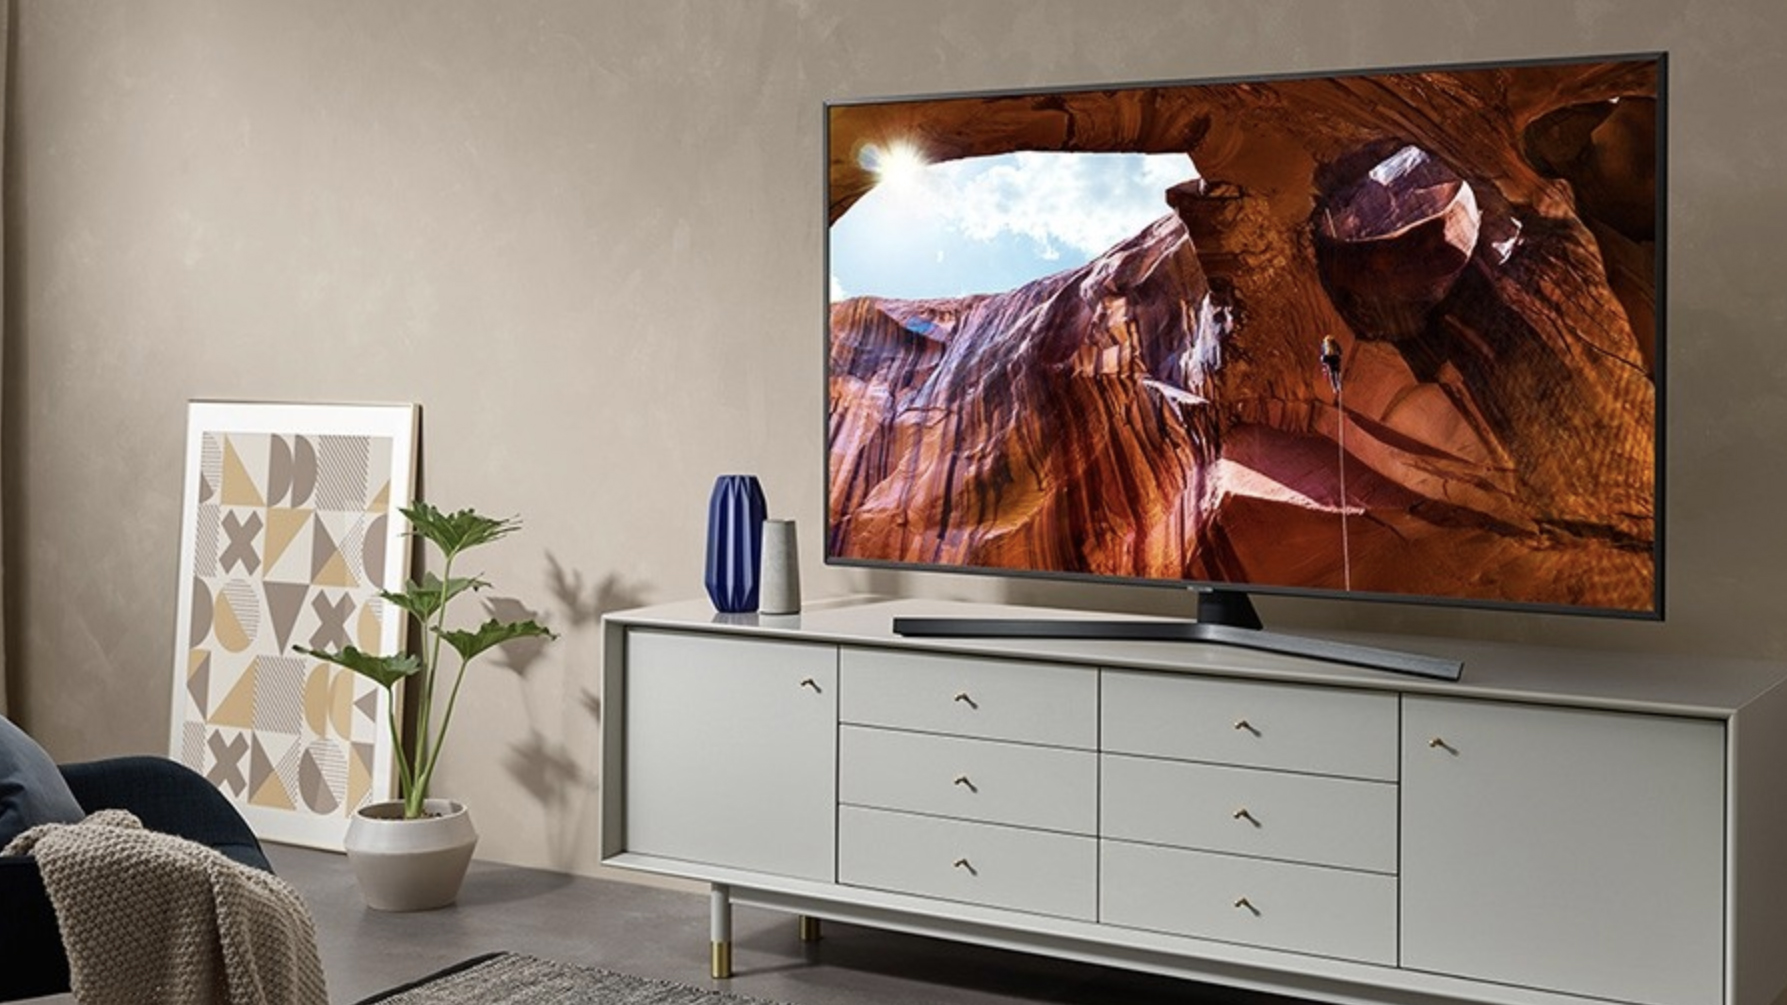 Samsung RU7470 LED TV review TechRadar